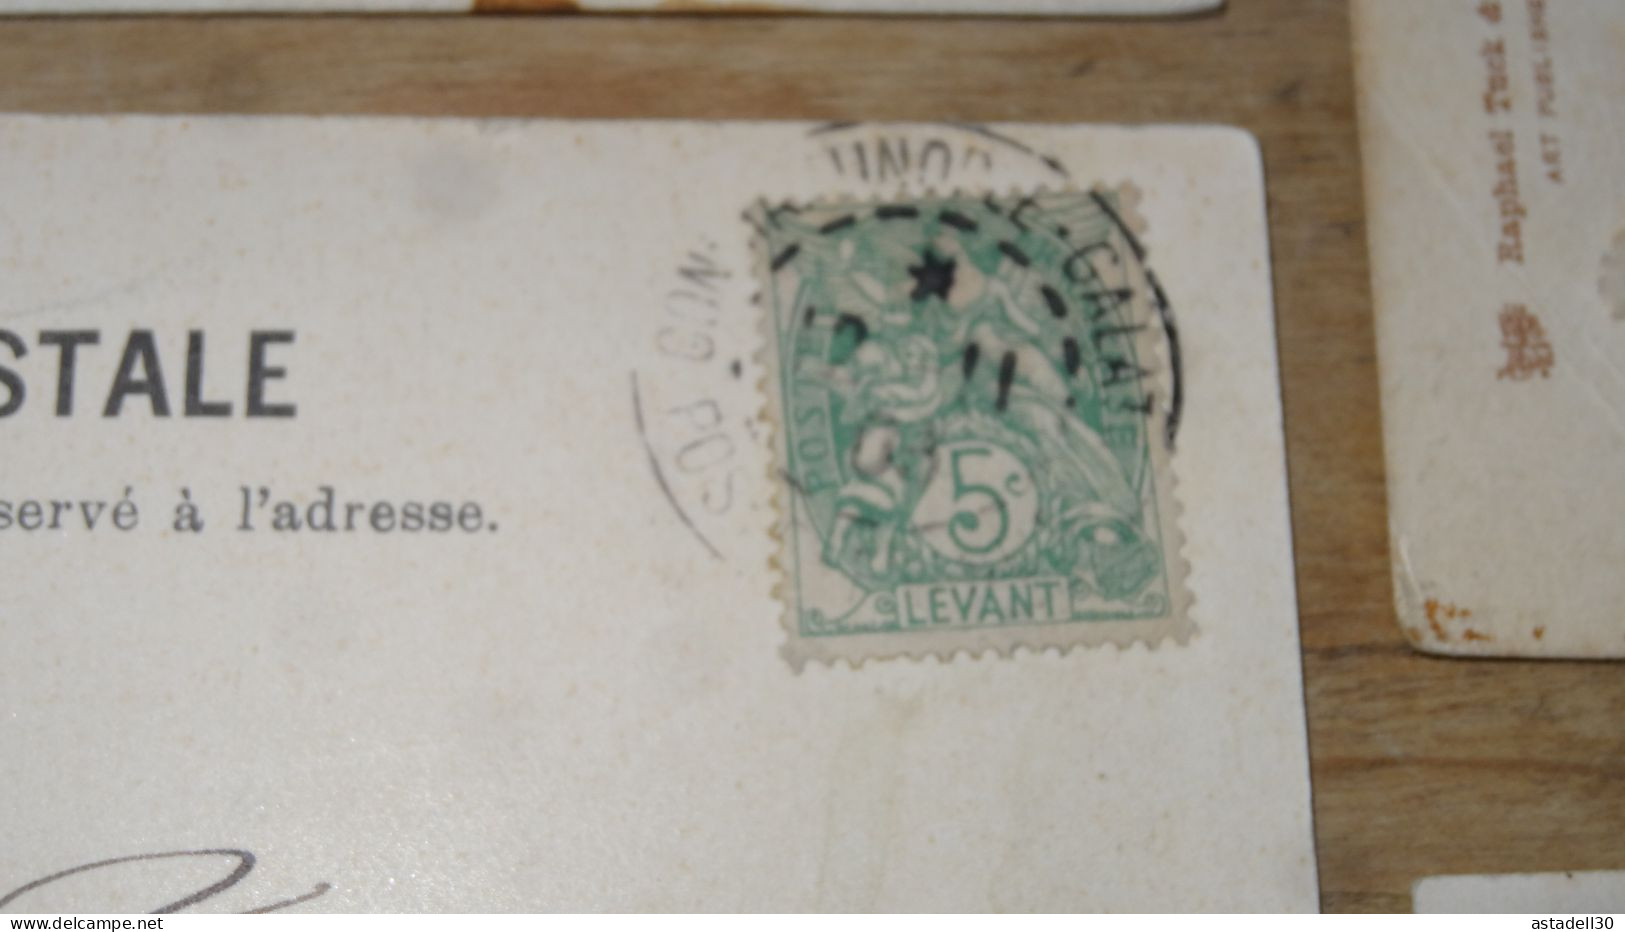 TURKIYE - TURQUIE Lot de timbres sur cartes postale  ................ 19220